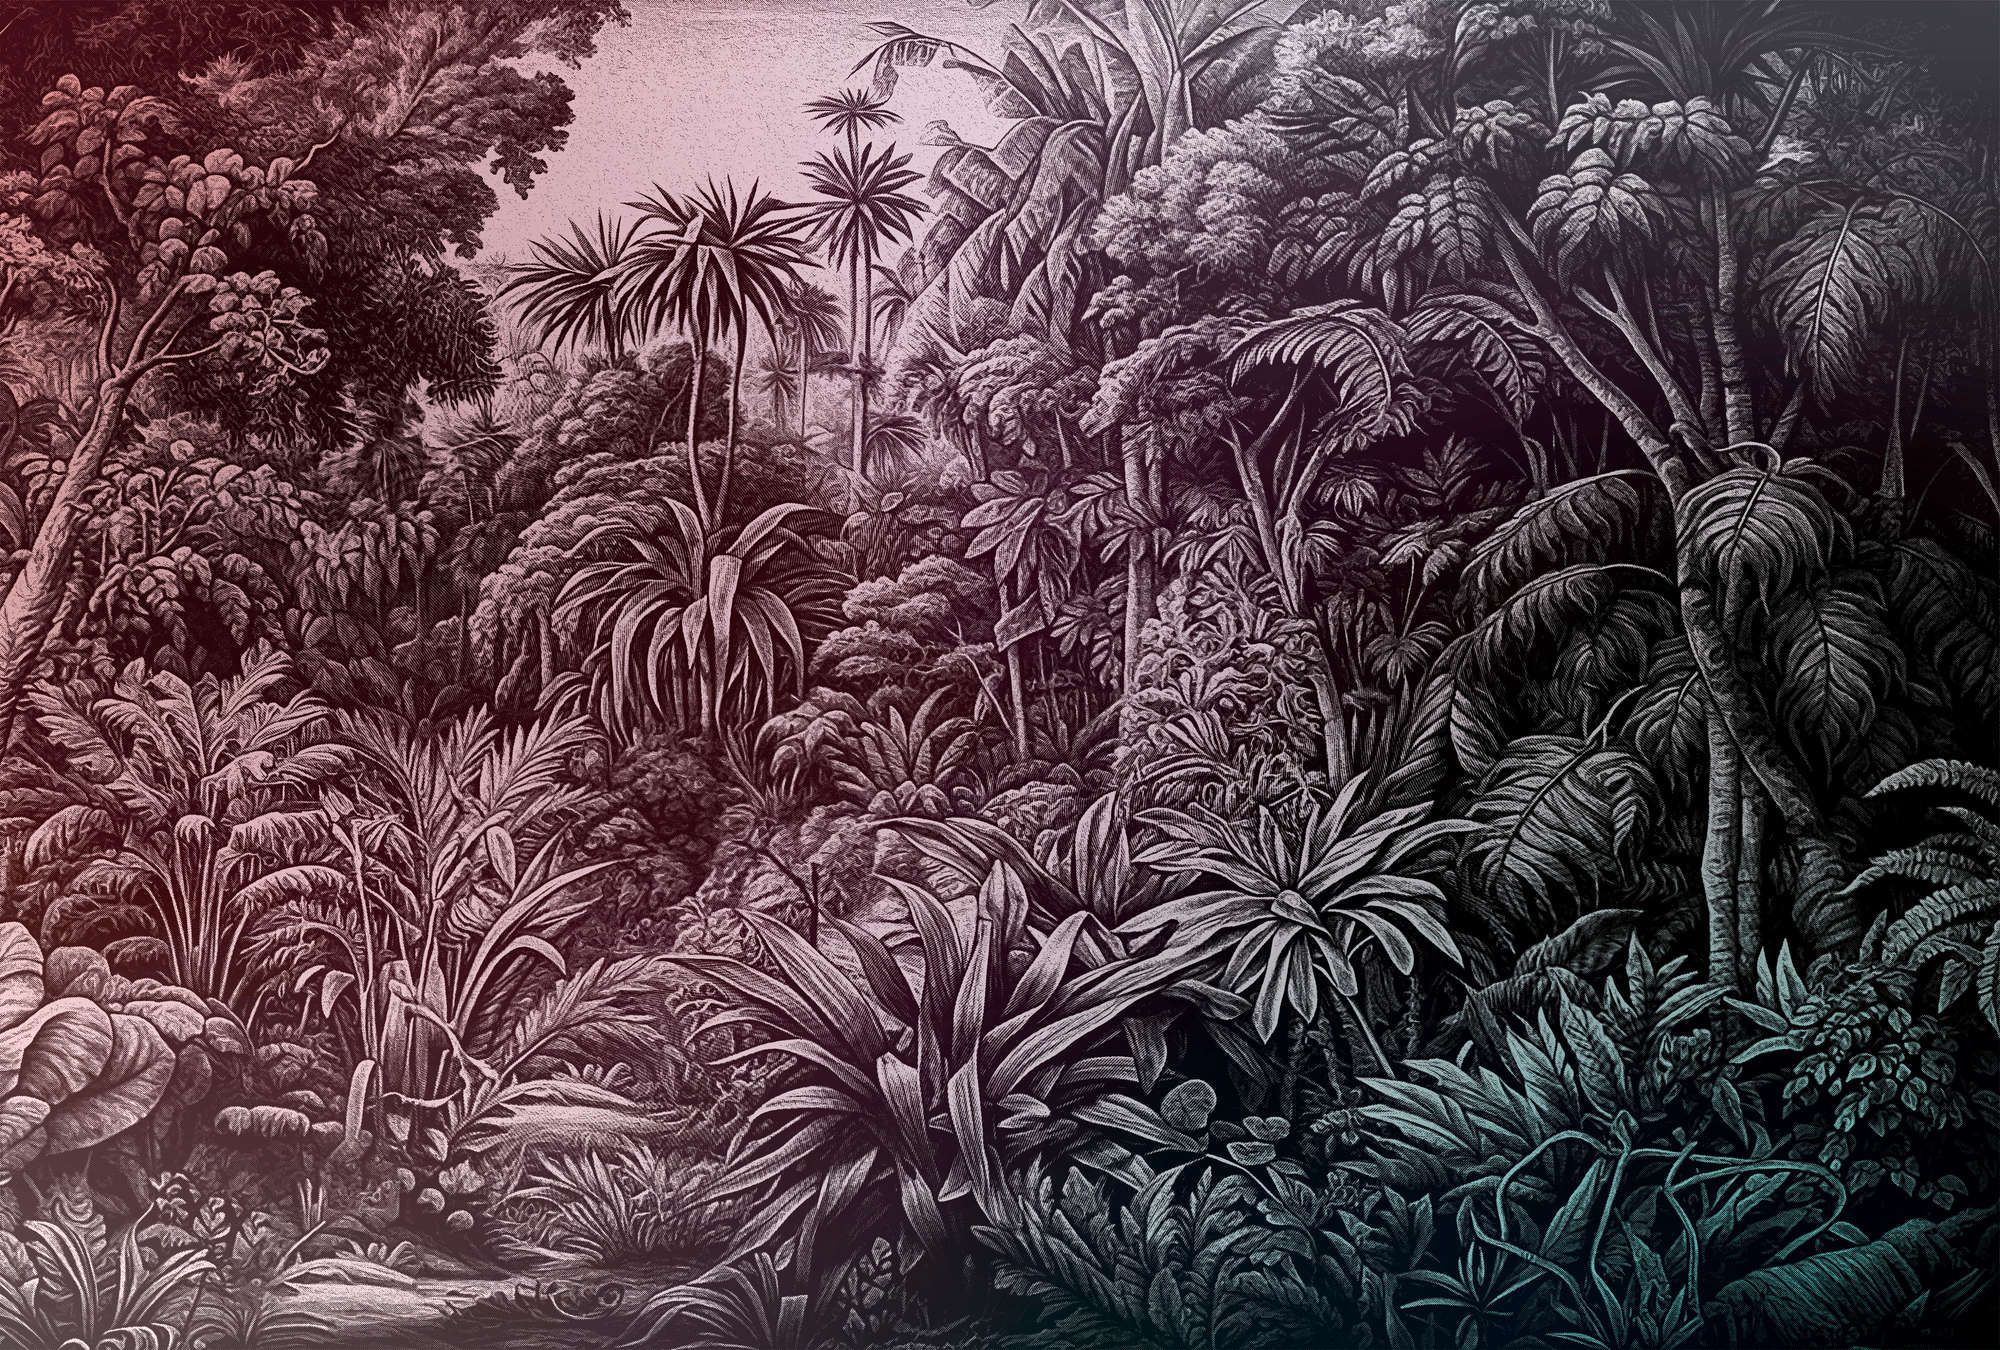             Wandschildering »livia« - Jungle design met kleurverloop - Paars tot donkergroen | mat, glad vlies
        